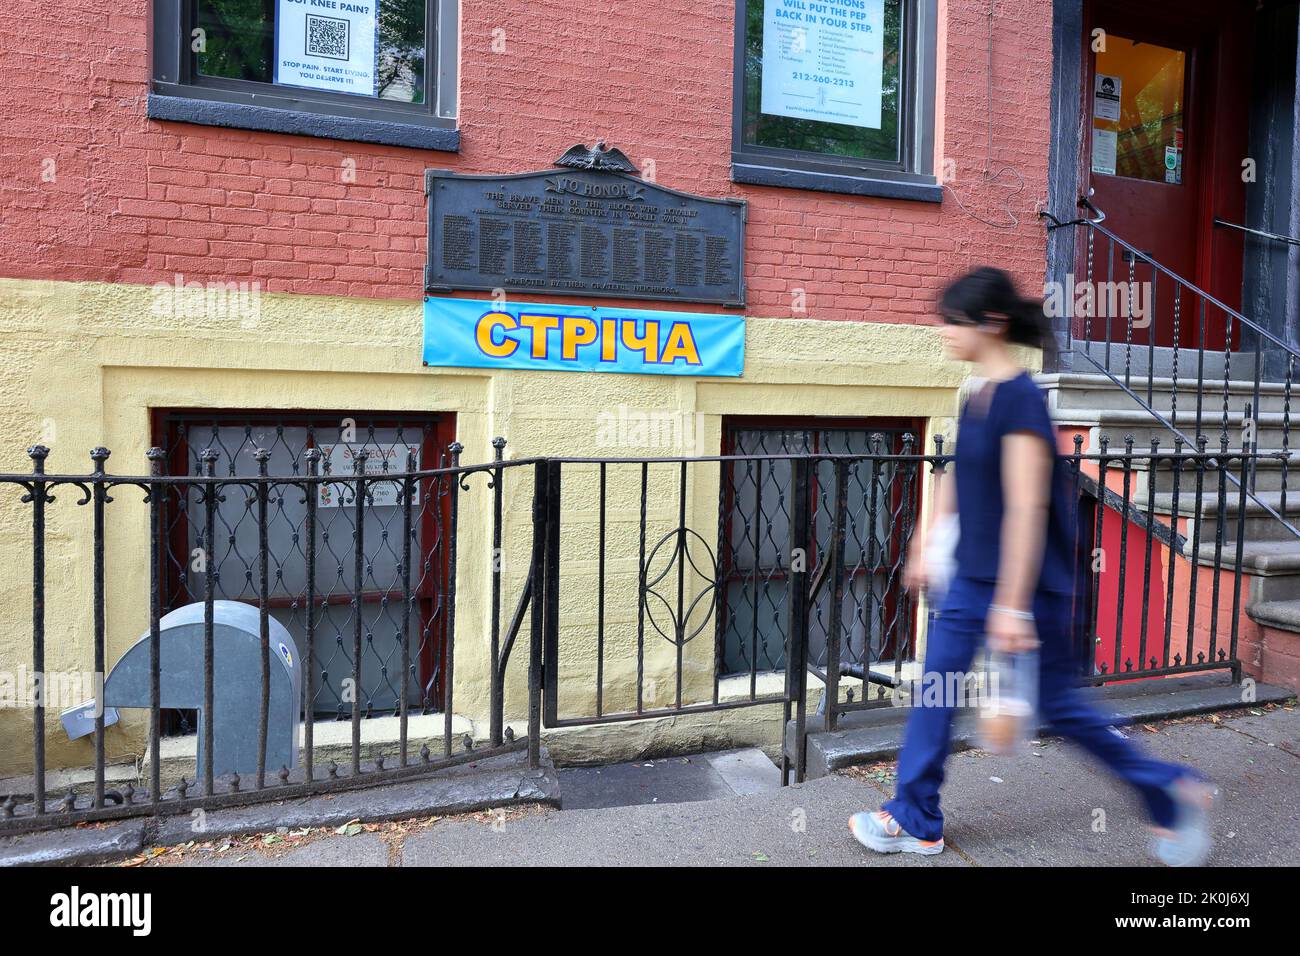 Streecha стріча, 33 E 7. St, New York, NYC Foto von einem ukrainischen Restaurant in Manhattans East Village-Viertel. Stockfoto